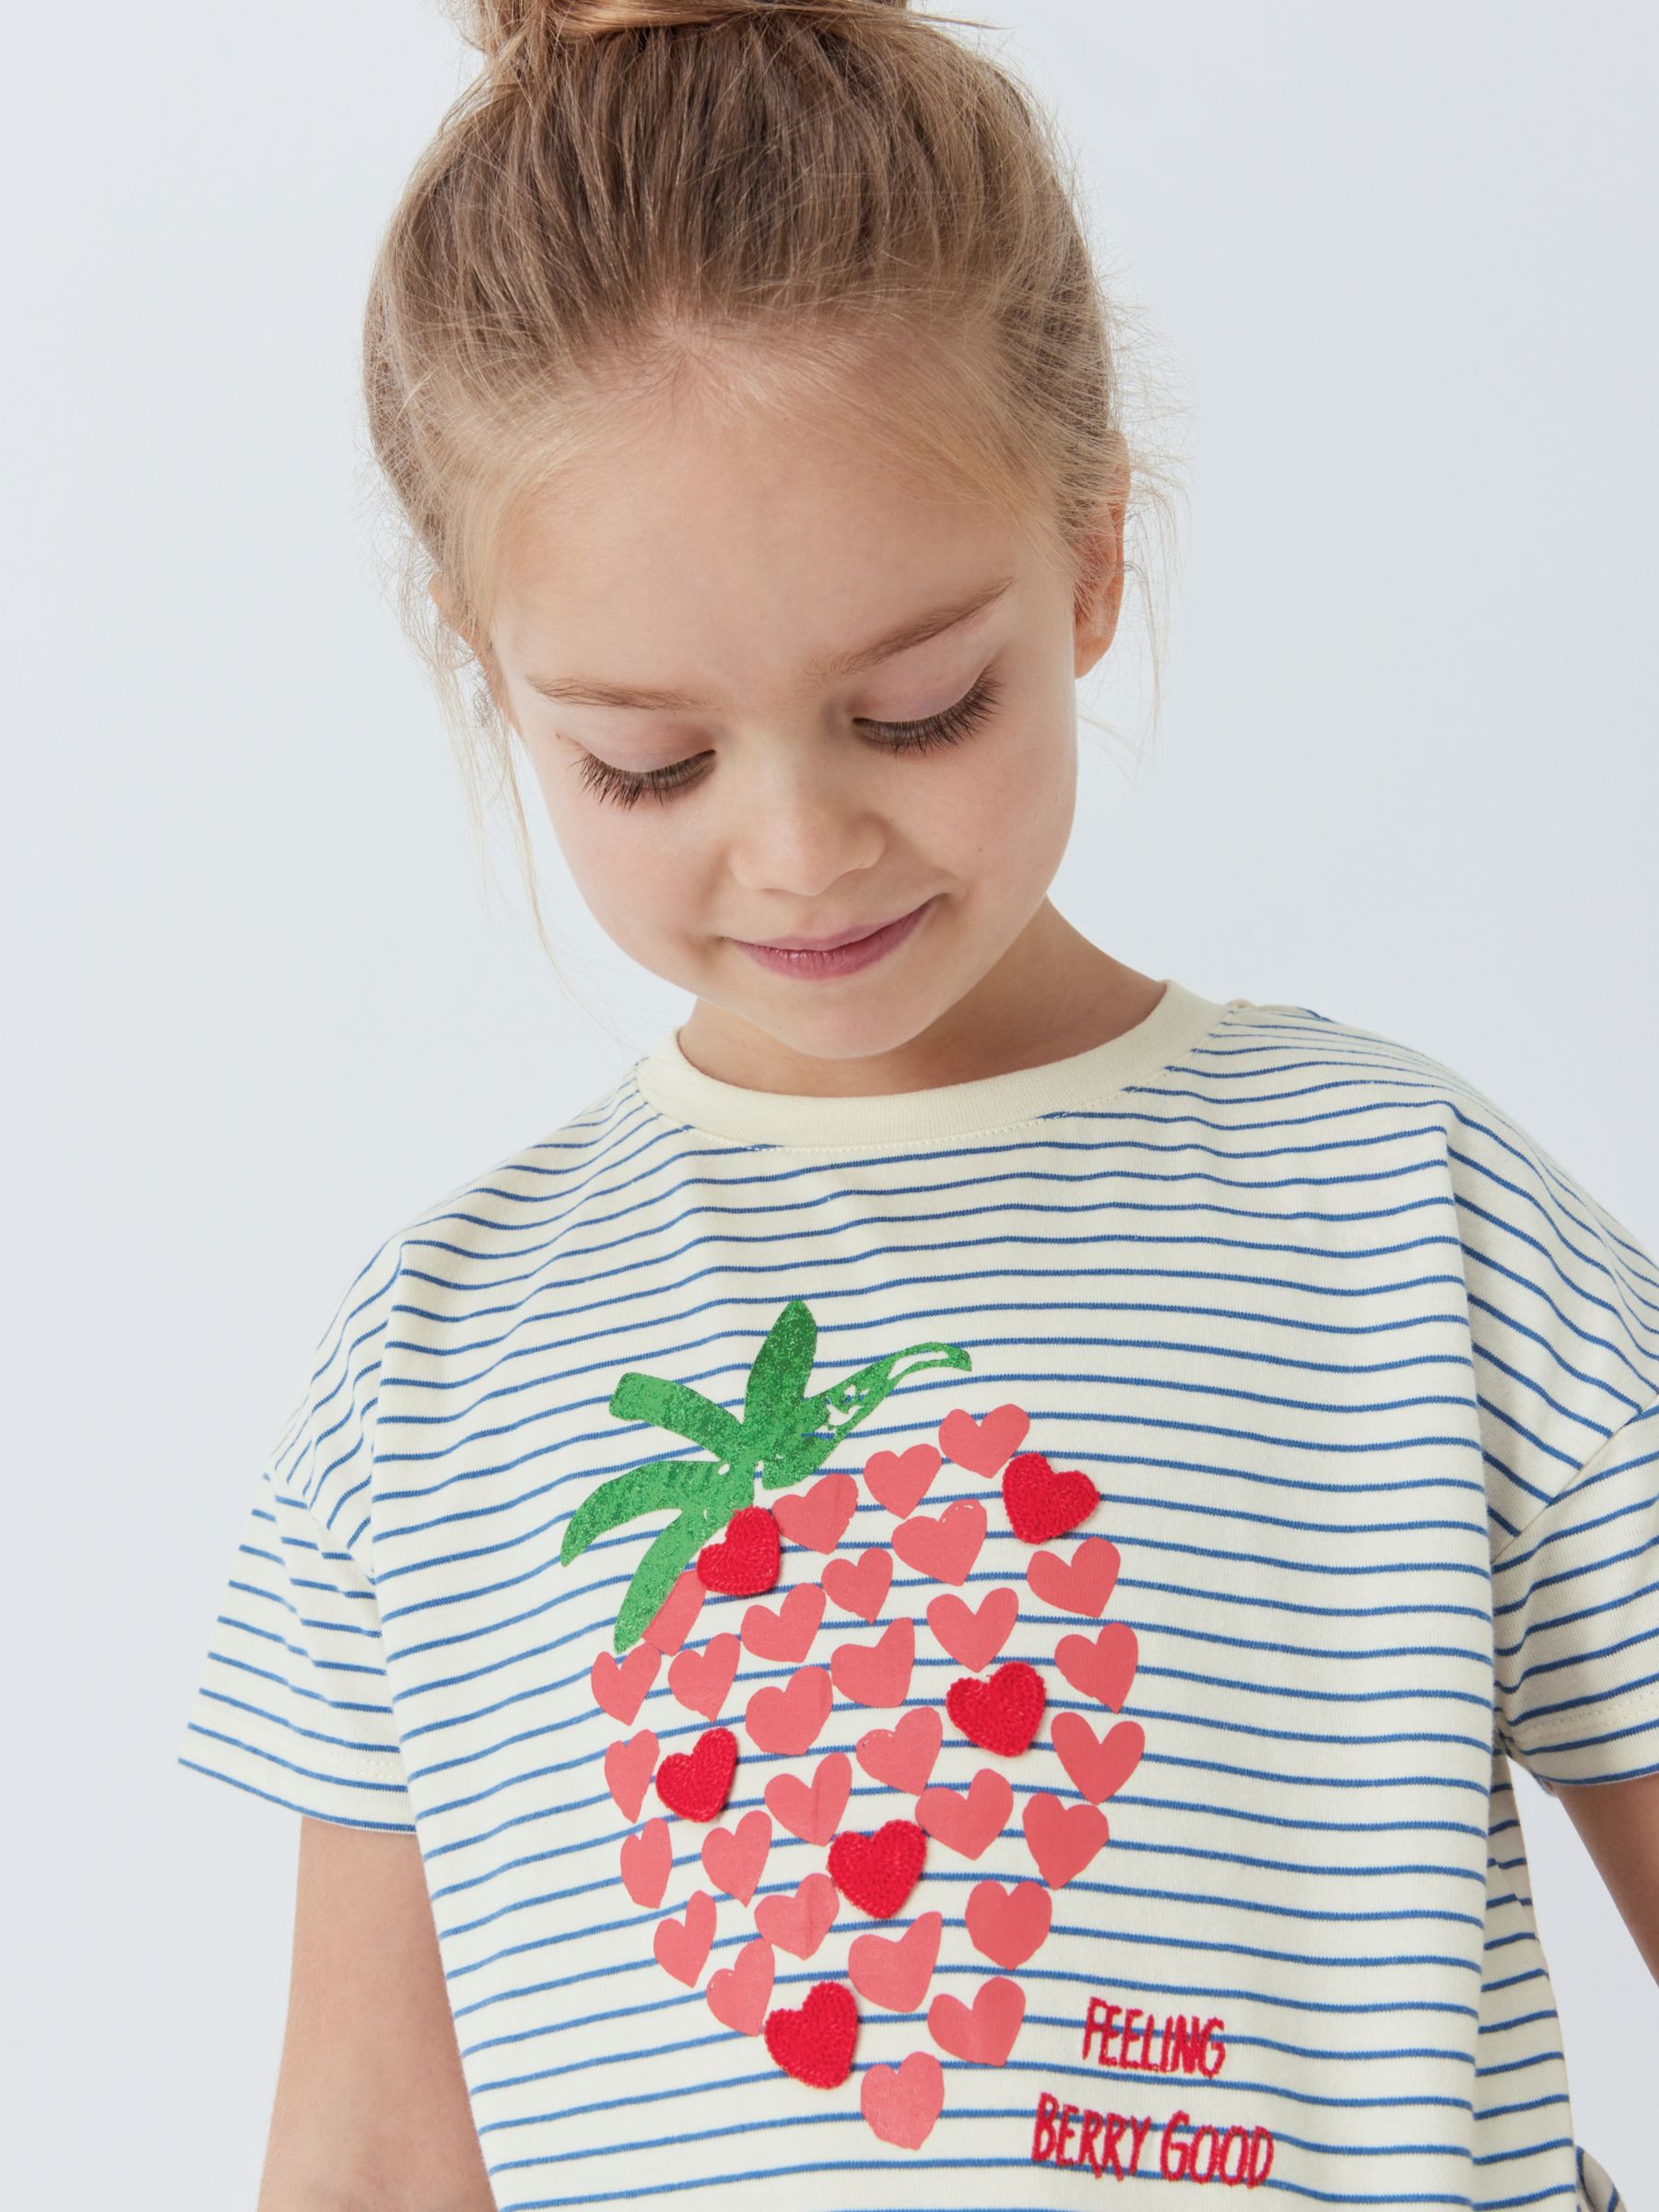 John Lewis Kids' Stripe Strawberry T-Shirt, Multi, 7 years